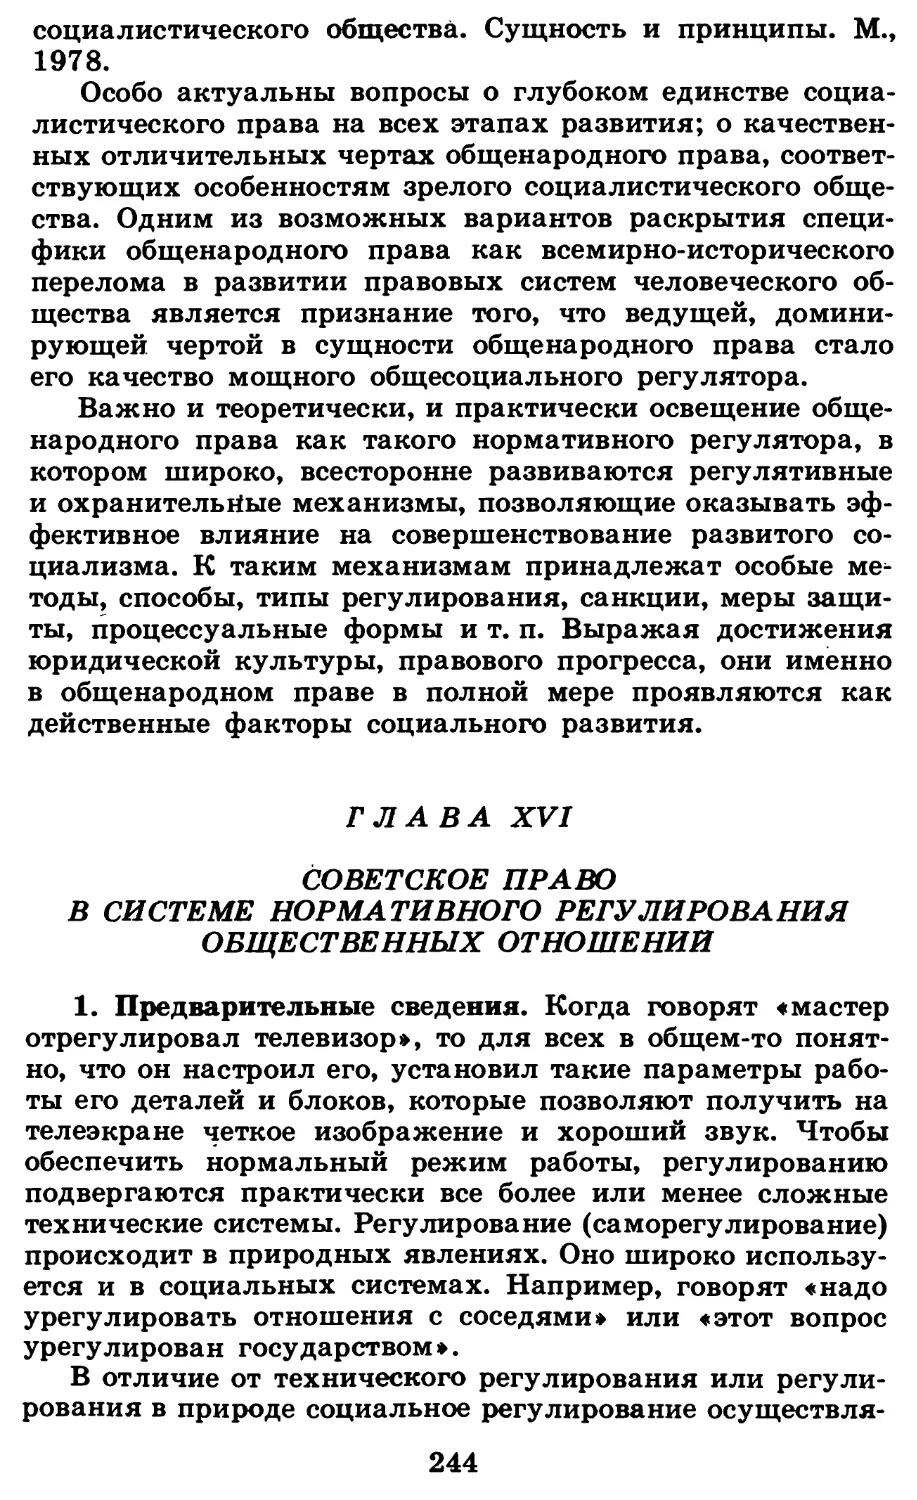 Глава XVI. Советское право в системе нормативного регулирования общественных отношений